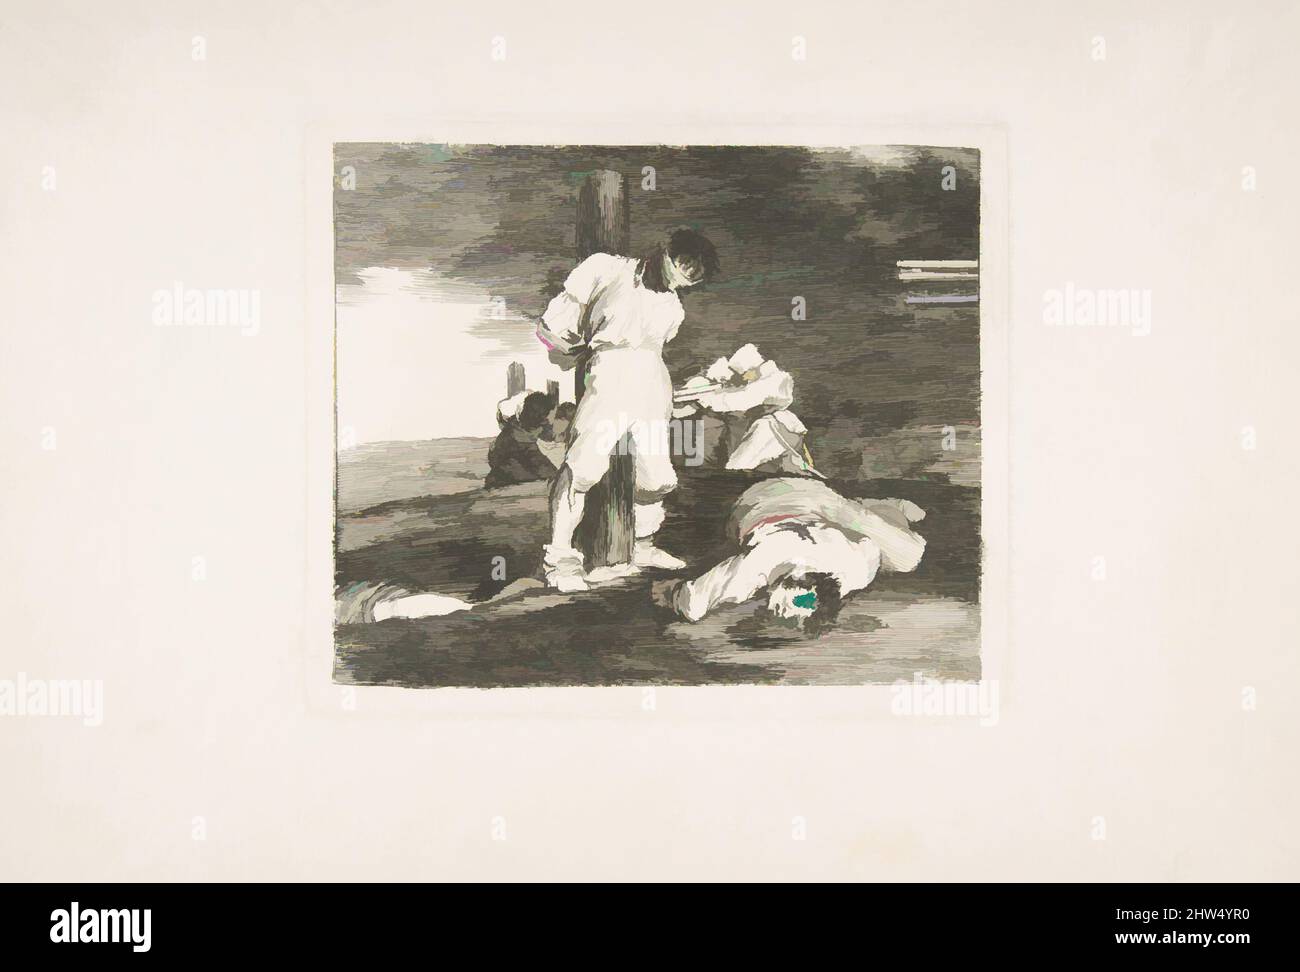 Art inspiré par la planche 15 de 'les désastres de la guerre' (Los Desastres de la Guerra): Et il n'y a pas d'aide (y no hai remado), 1810, Etching, Drypoint, burin, Et burnisher, plaque : 5 1/2 x 6 9/16 po. (14 x 16,7 cm), Prints, Goya (Francisco de Goya y Lucientes) (Espagnol, Fuendetodos 1746–, oeuvres classiques modernisées par Artotop avec une touche de modernité. Formes, couleur et valeur, impact visuel accrocheur sur l'art émotions par la liberté d'œuvres d'art d'une manière contemporaine. Un message intemporel qui cherche une nouvelle direction créative. Artistes qui se tournent vers le support numérique et créent le NFT Artotop Banque D'Images